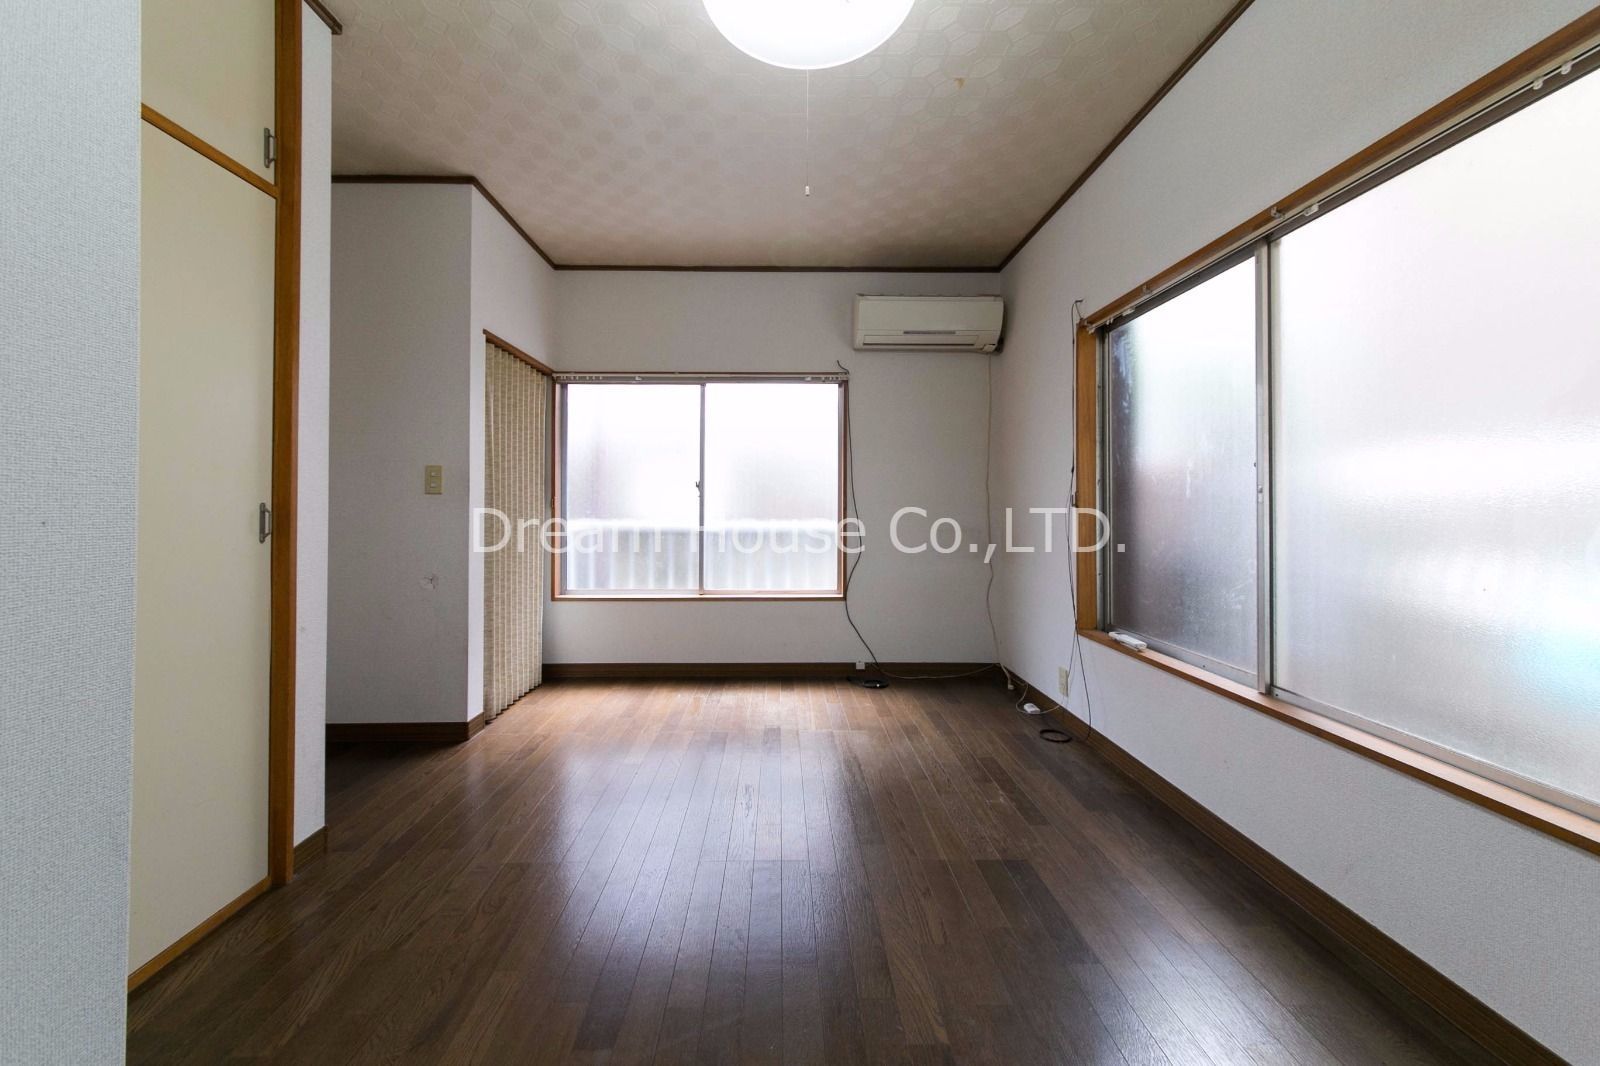 文京区で初めての一人暮らしに最適なアパート。ハイツ水川は家賃5万円